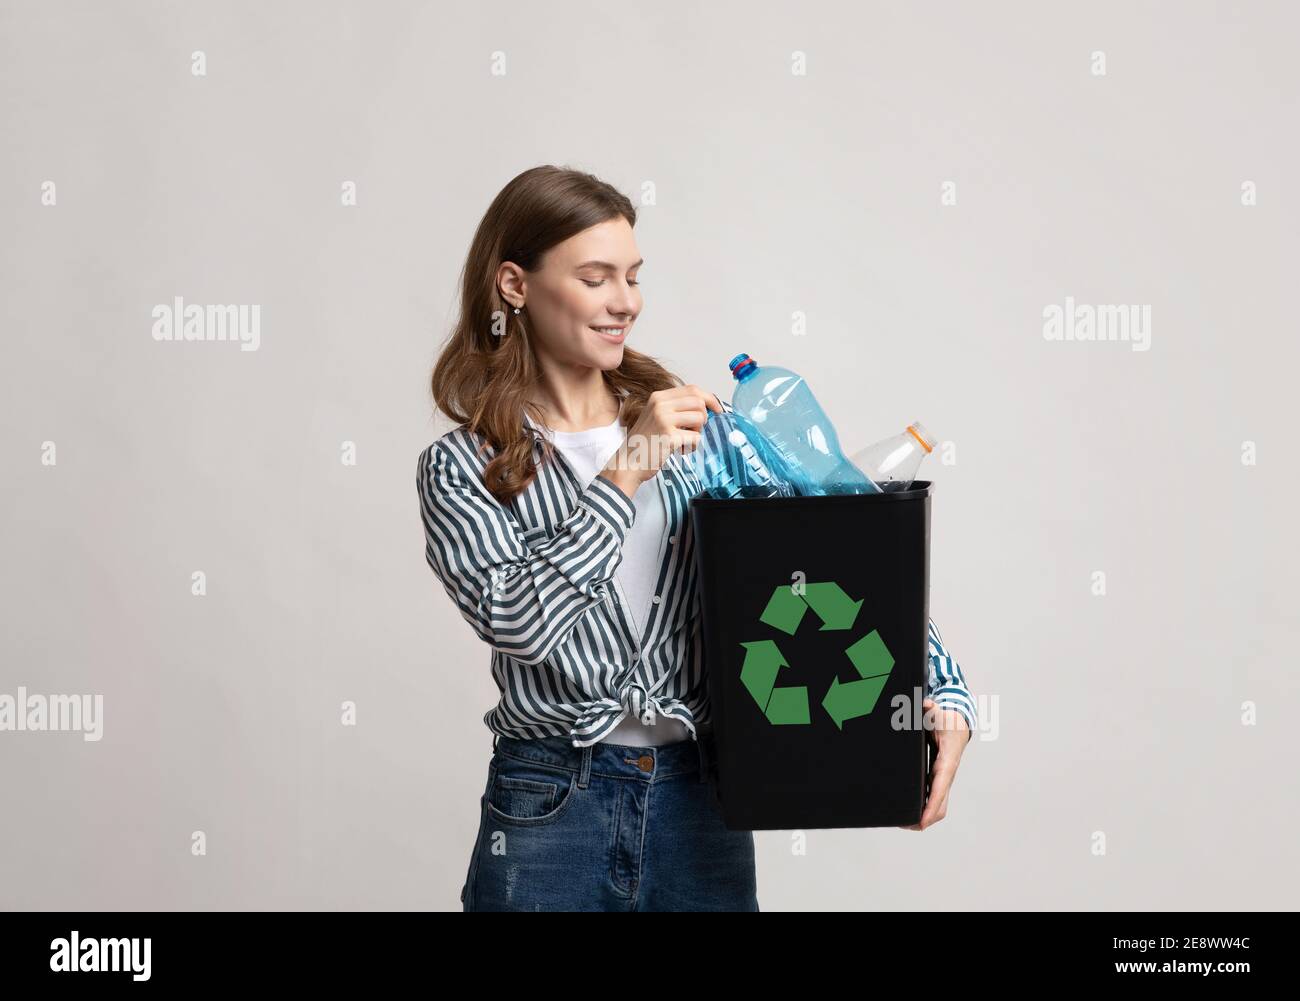 Reciclaje de residuos. Mujer joven sonriente sosteniendo un recipiente negro con botellas de plástico Foto de stock